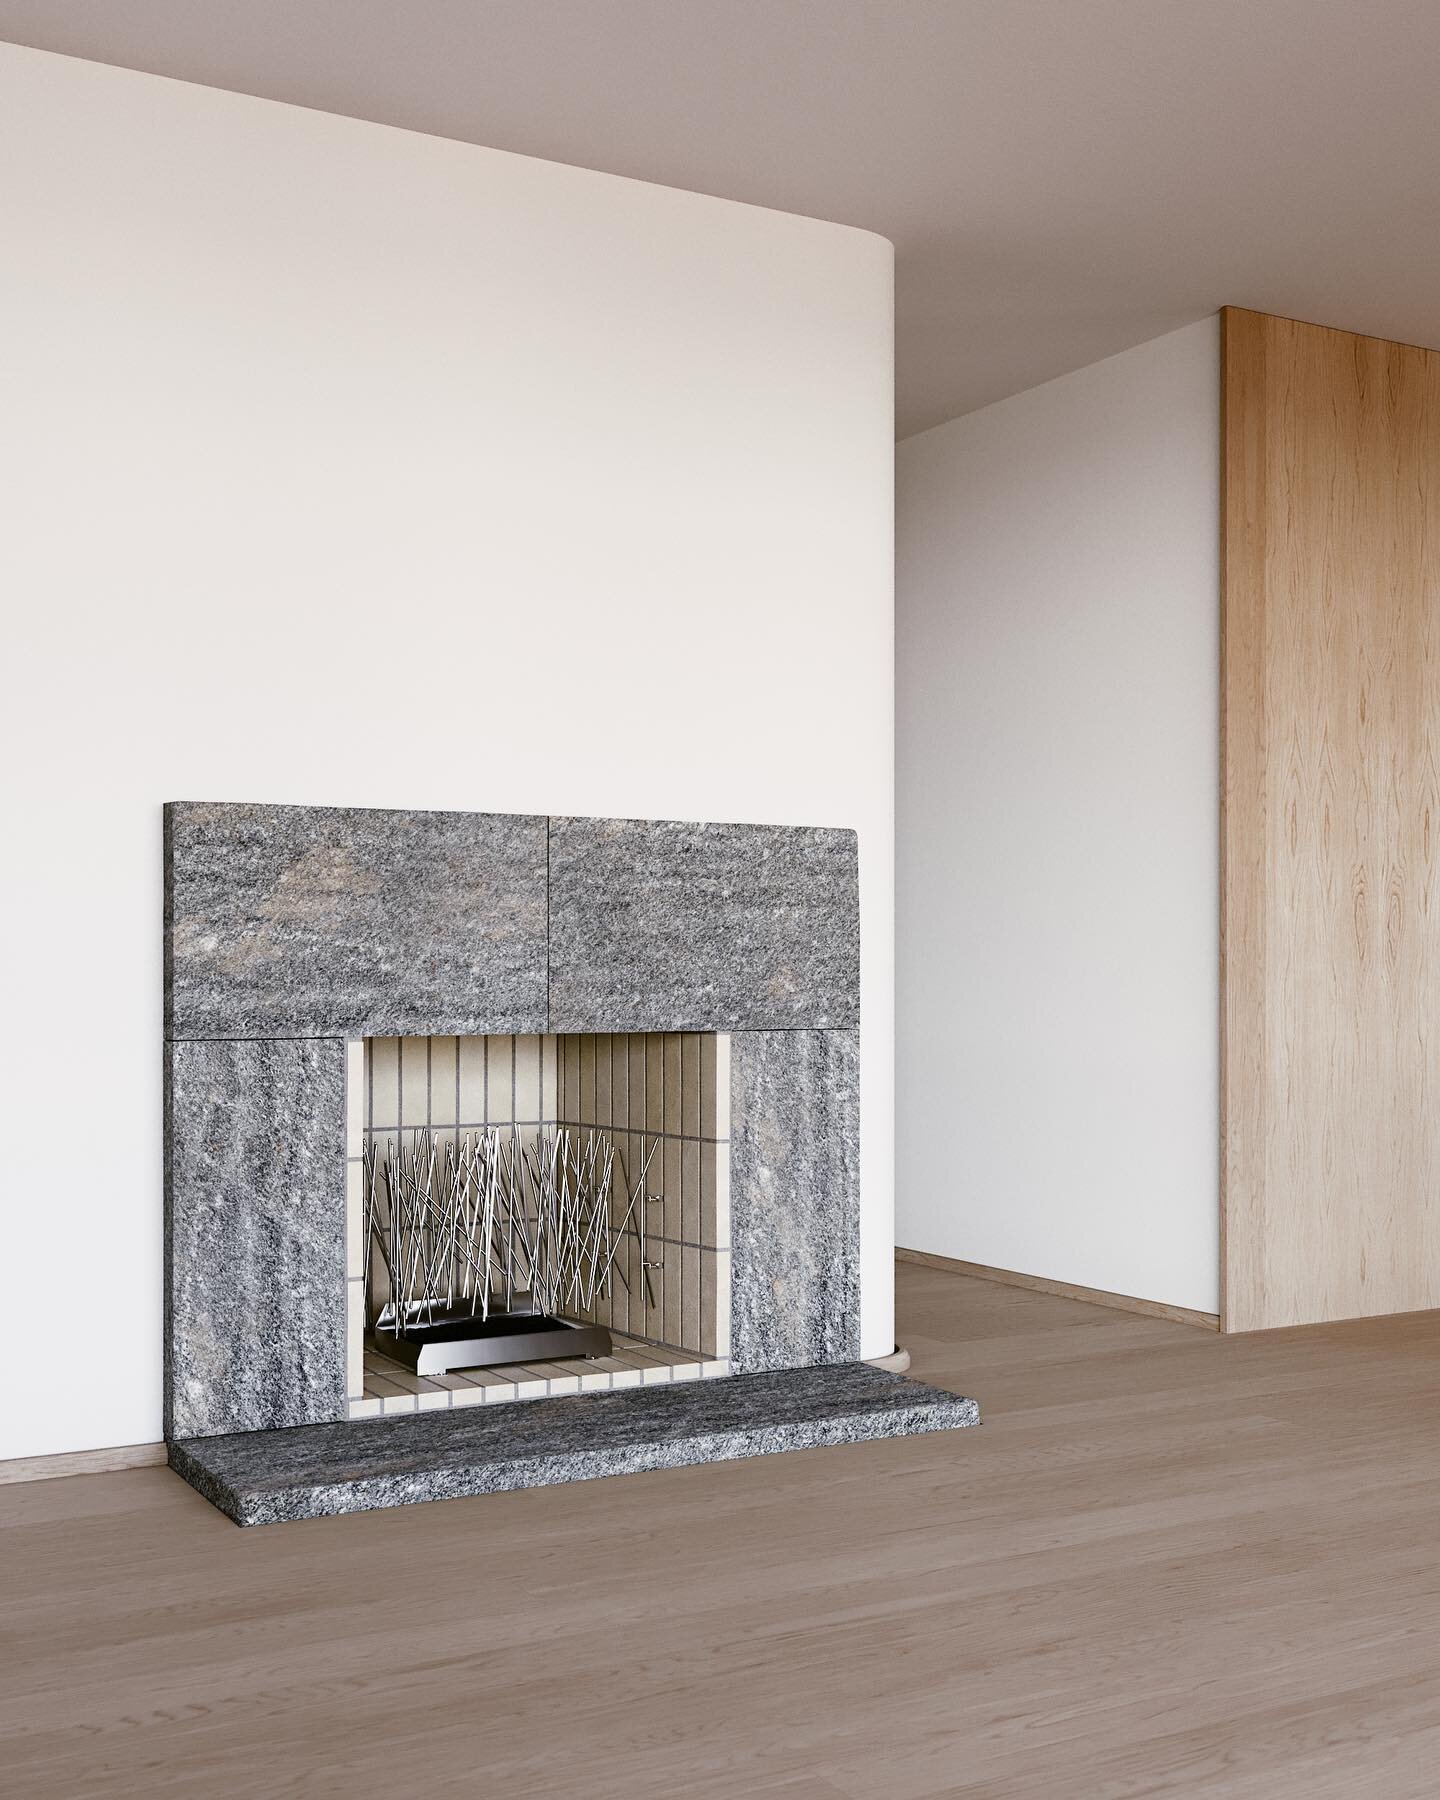 Fireplace studies
.
.
.
#nashville #architecture #coronarender #coronarenderer #archviz #fireplace #design #oak #residentialdesign #nashvilledesign #architect #architecturephotography #details